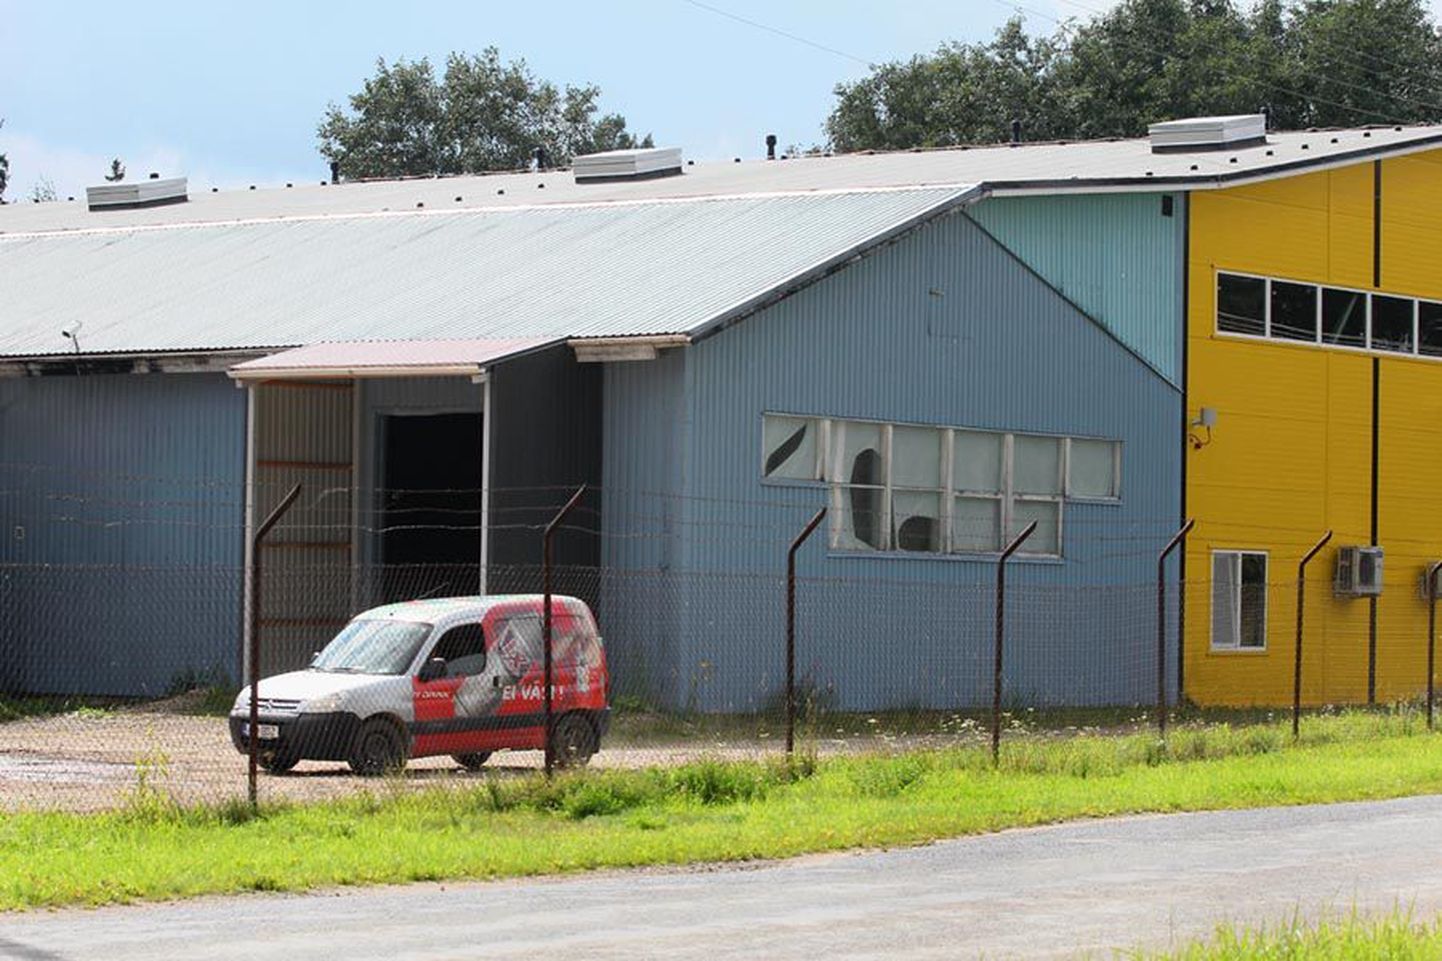 Liiwi Heliisi tehase kinnistu on 2009. aastast saadik korduvalt omanikku vahetanud. Praegu tegutseb seal rentnik, kes on suure osa endistest viinatootja töötajatest tagasi palganud, ja neljapäeval hoovil sõitnud autogi kandis veel kunagisi Liiwi Heliisi kaubamärke.